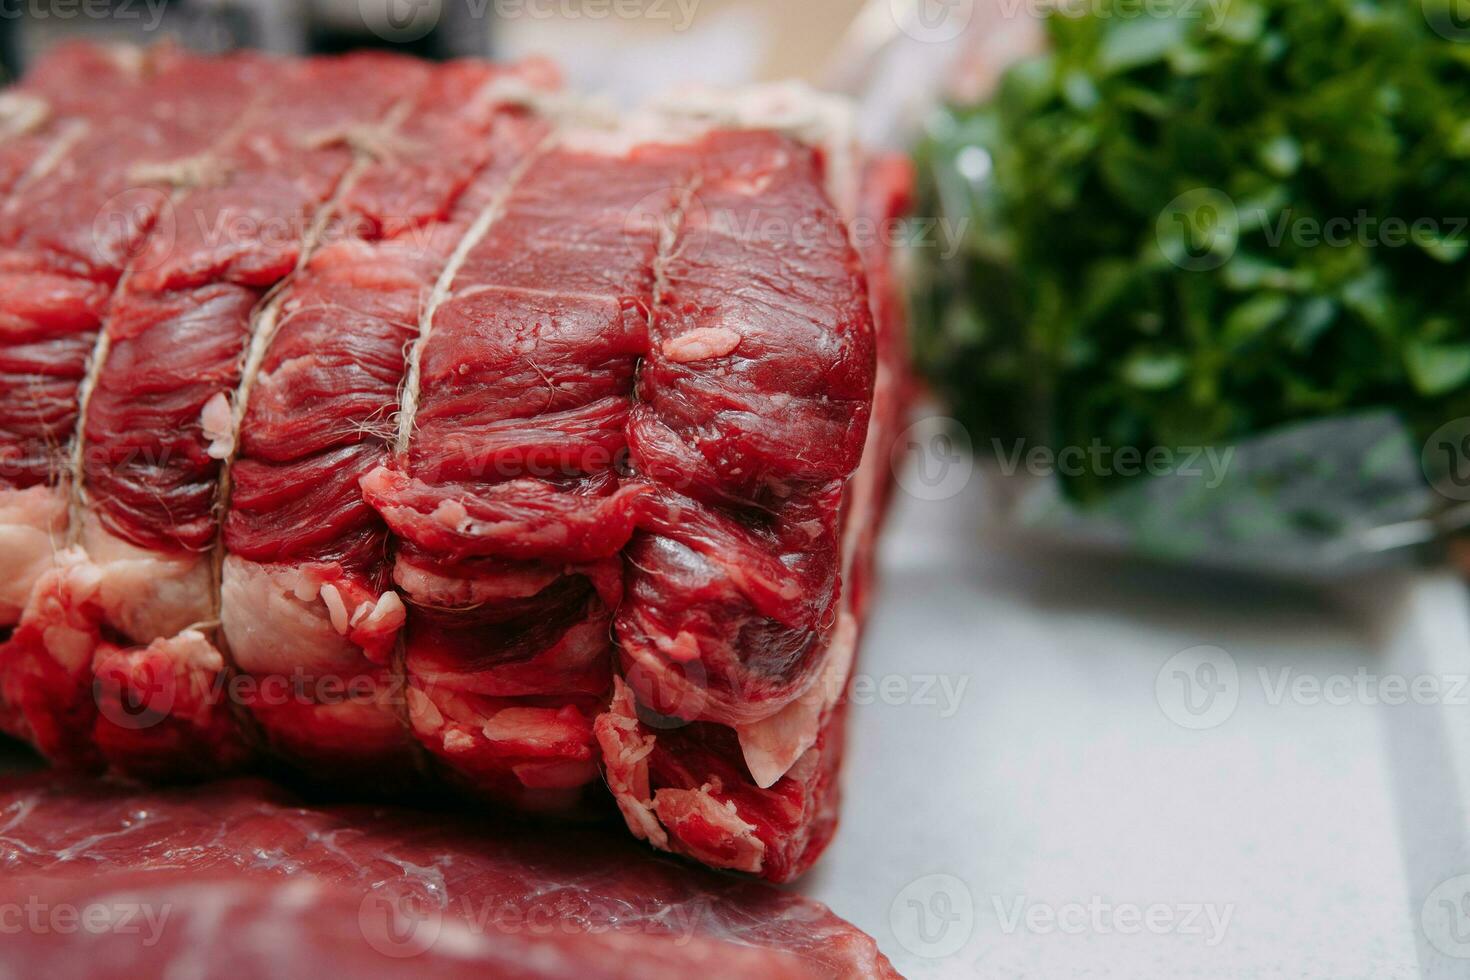 vieilli du boeuf pour cuisine steak dans une cuisine classe. brut du boeuf et légumes verts, fermer. photo